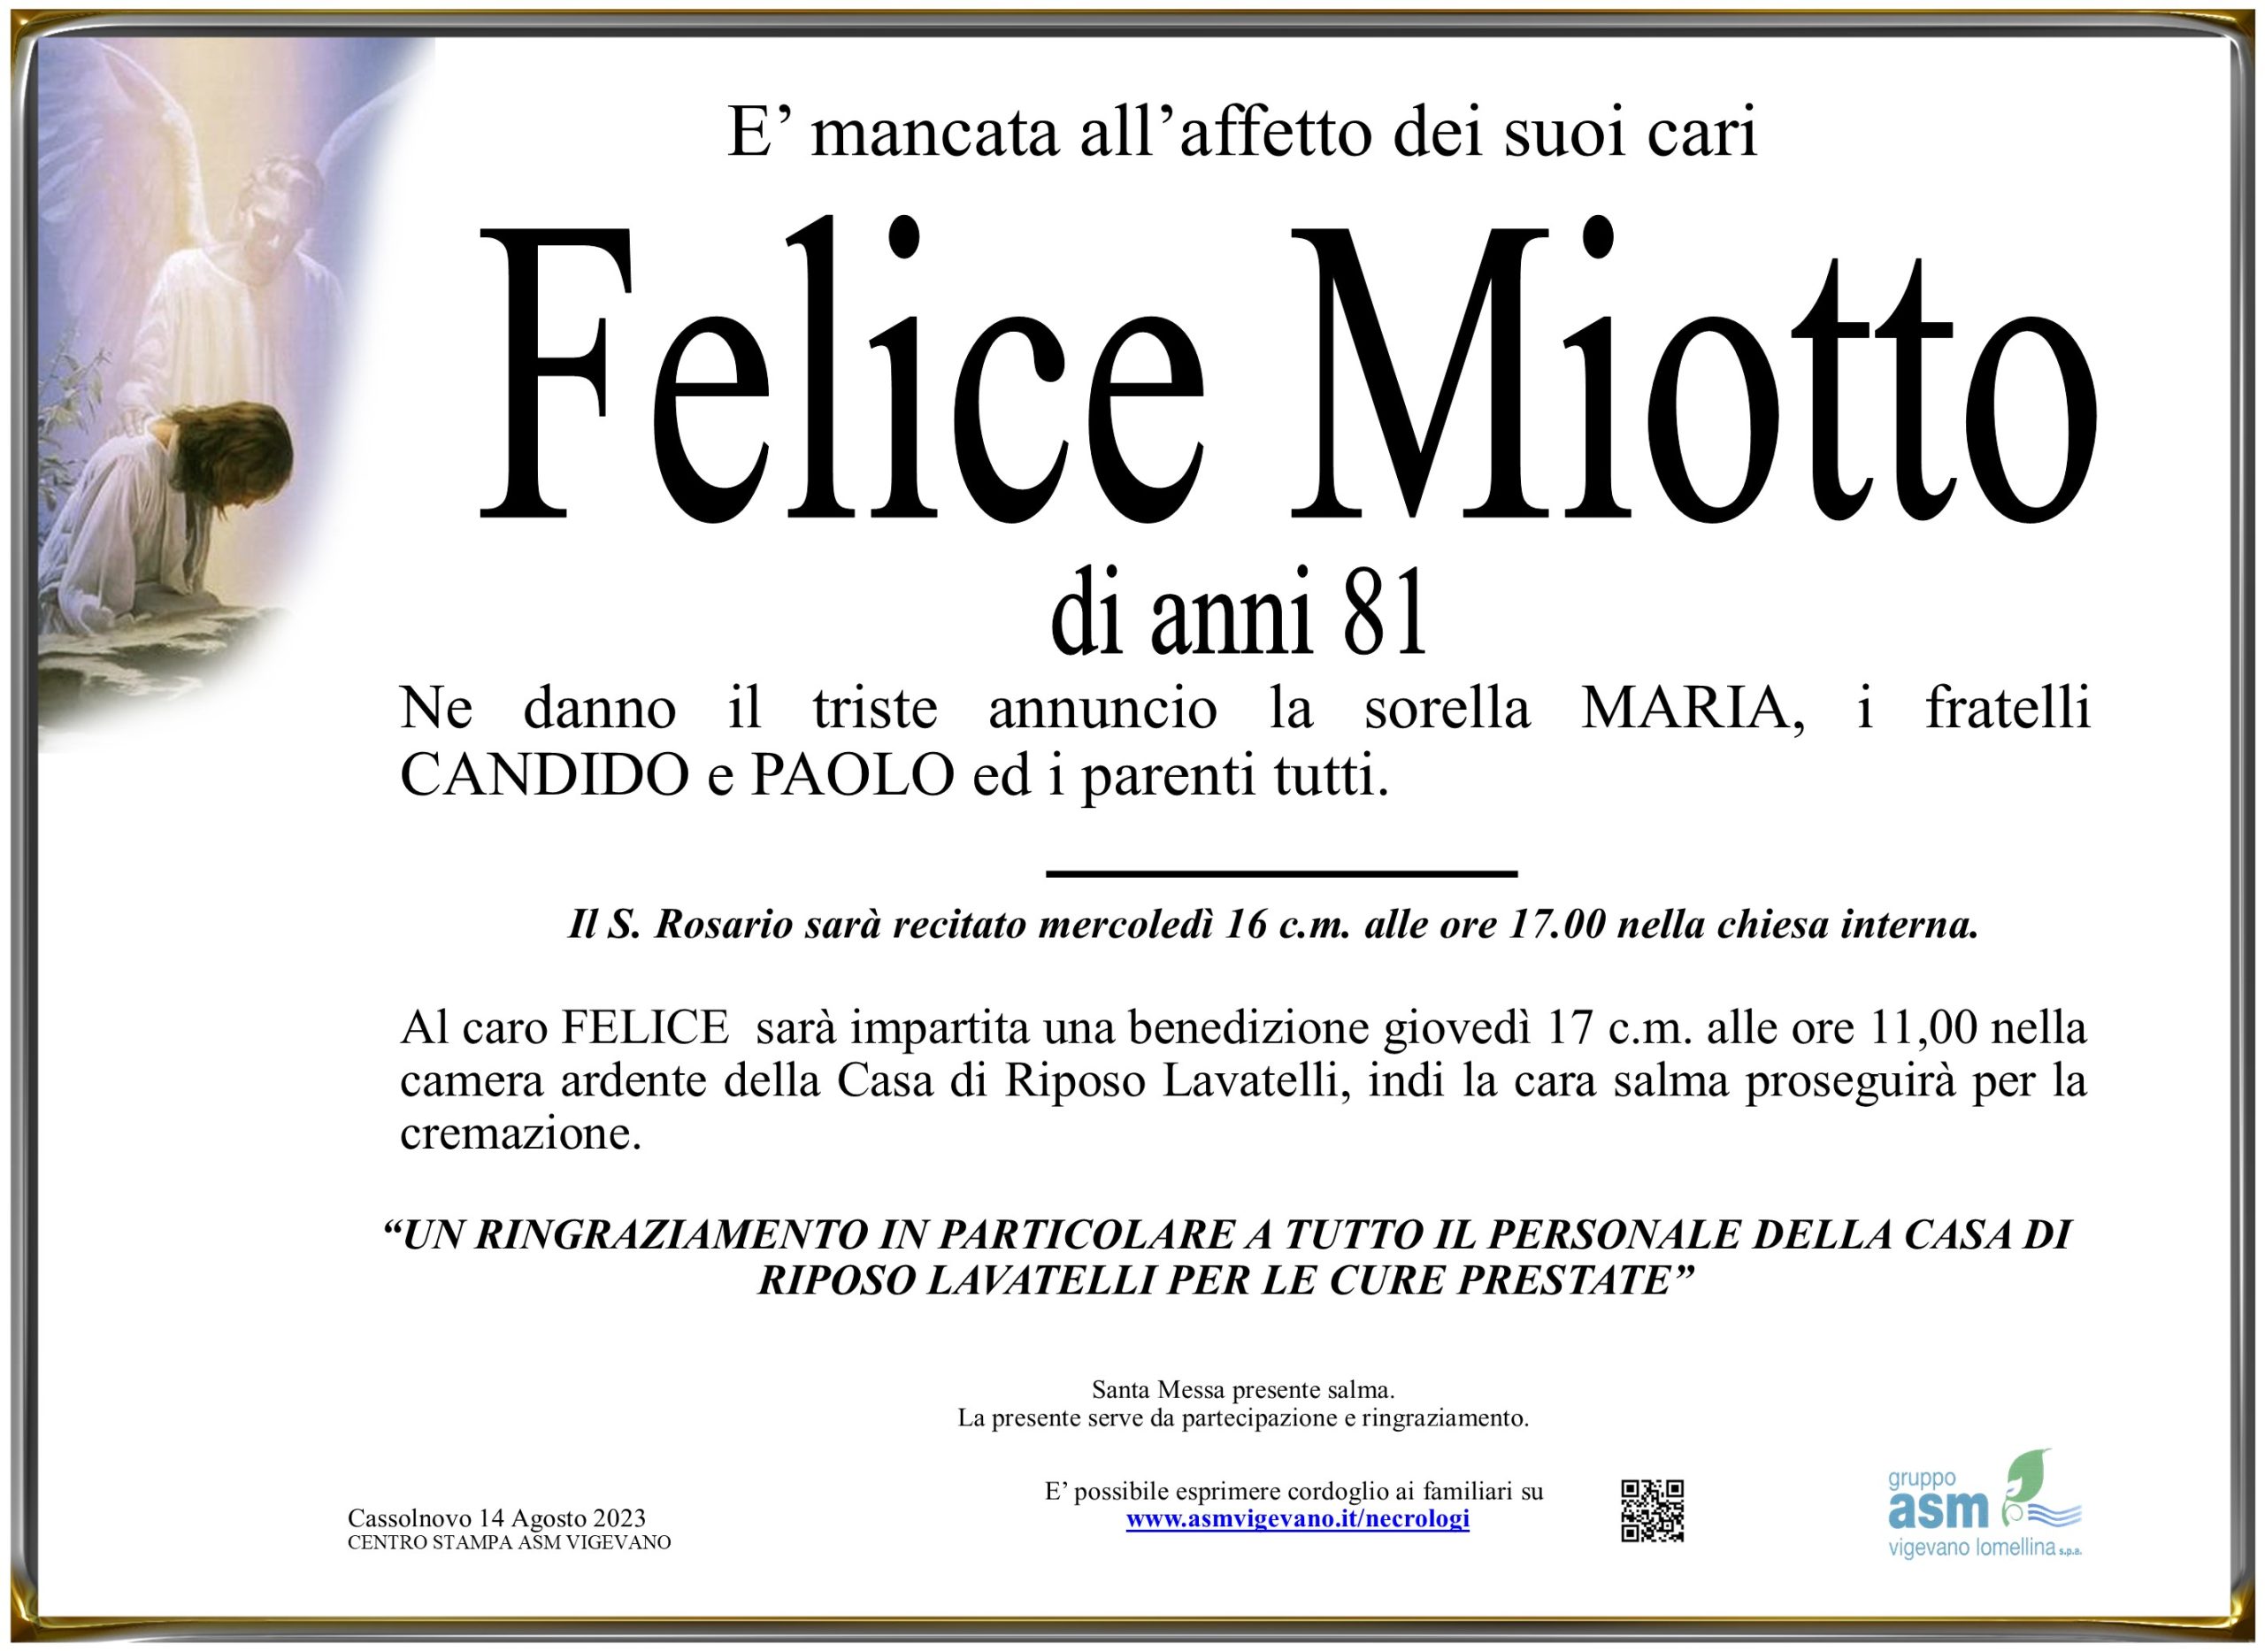 Felice Miotto